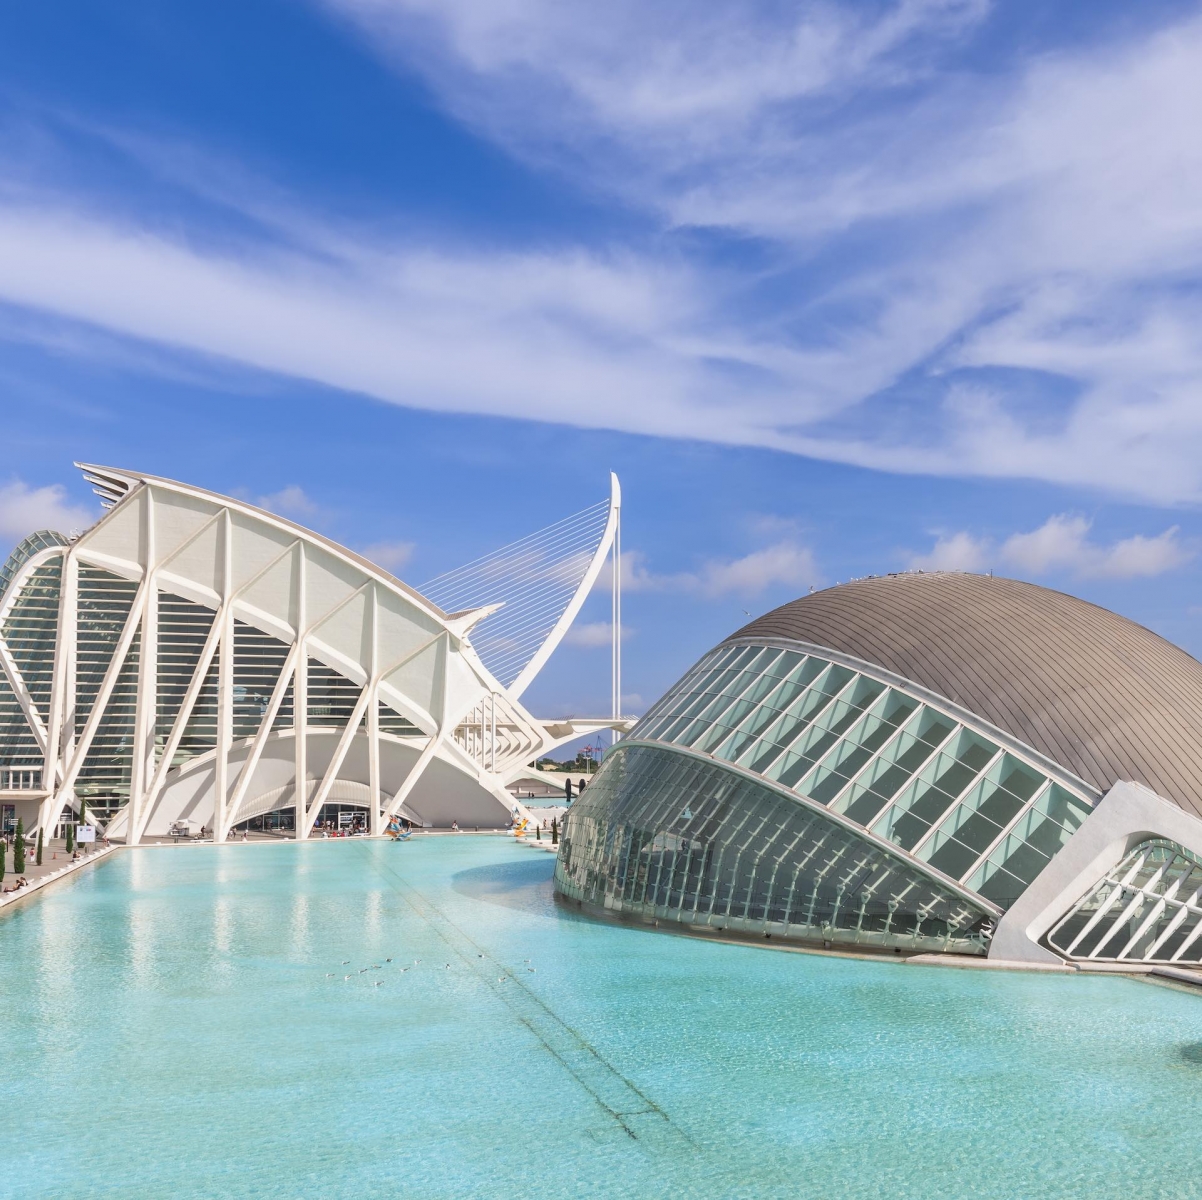 L'Hemisfèric est un bâtiment singulier et spectaculaire, conçu par Santiago Calatrava, qui représente un grand œil humain, l'œil de la sagesse.  Cet élément symbolise le regard et l'observation du monde que les visiteurs découvrent à travers de surprenantes projections audiovisuelles.